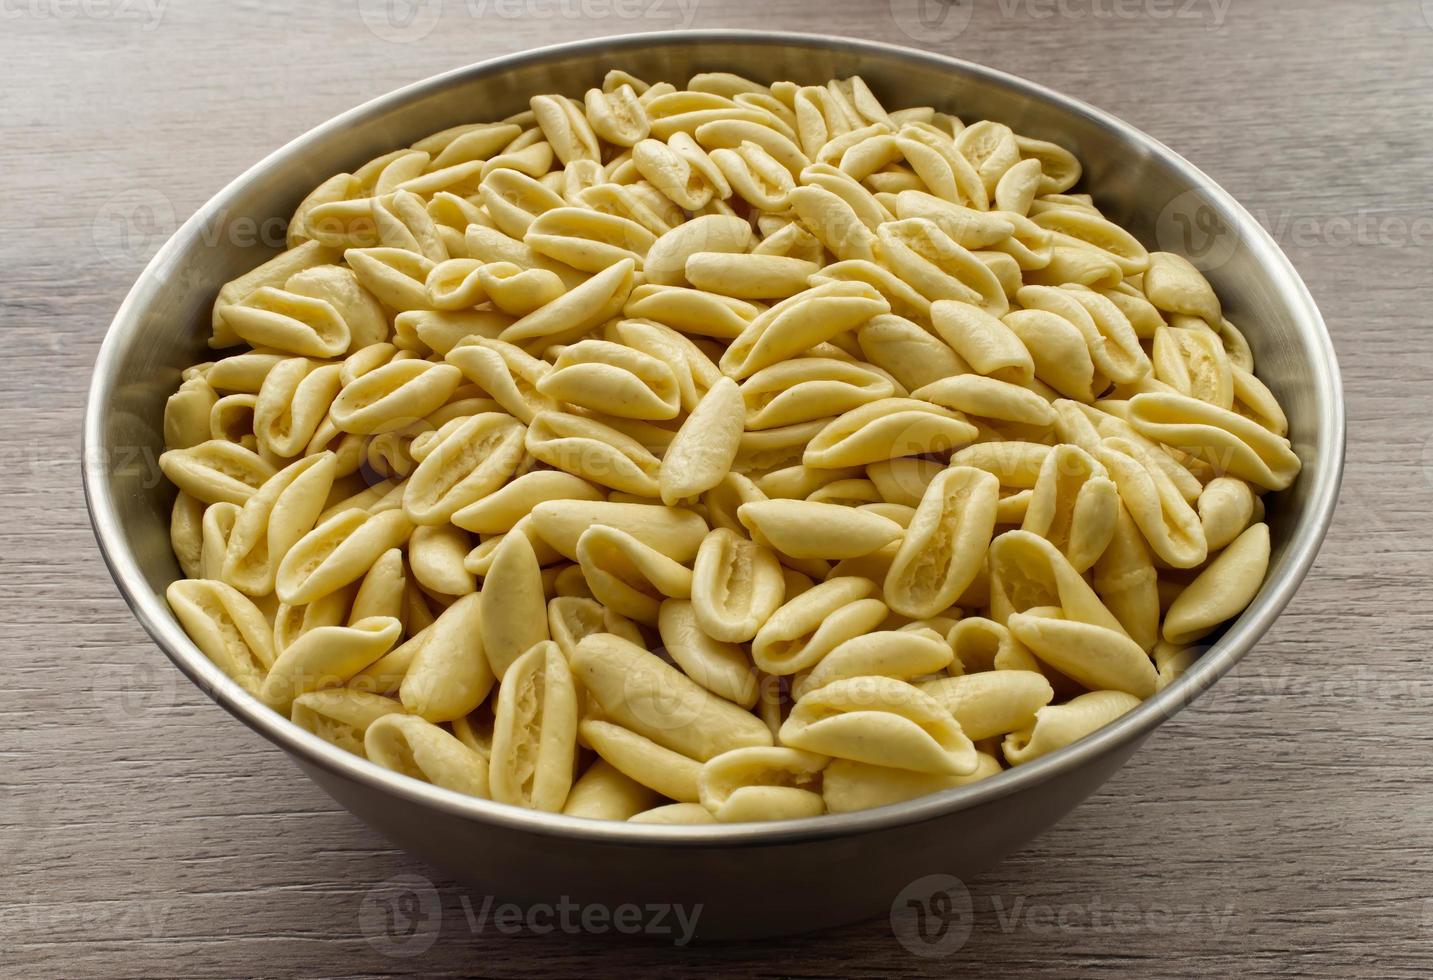 cavatelli italiani tradizionali crudi. i cavatelli sono un tipo di pasta corta tipica del sud italia, preparati solo con farina di semola e acqua. foto